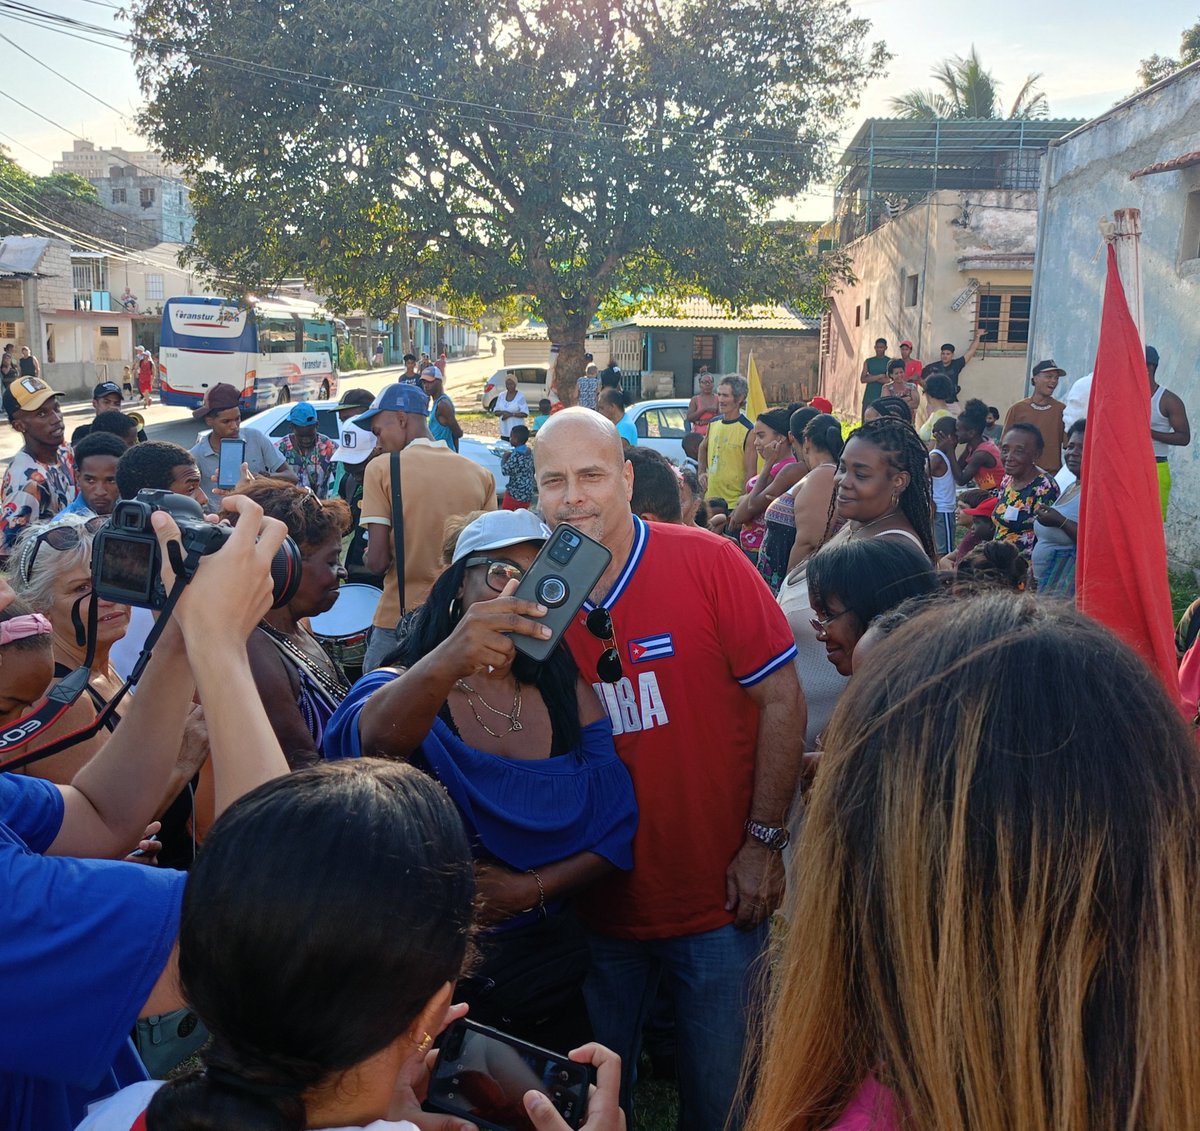 Estamos en el barrio Zaldo, del Cerro, donde dejaremos constituido un Destacamento de Vigilancia Popular Revolucionaria para proteger la comunidad, y tendremos un Barrio-Debate sobre el flagelo de las drogas. #Cuba #CDRCuba #SomosDelBarrio